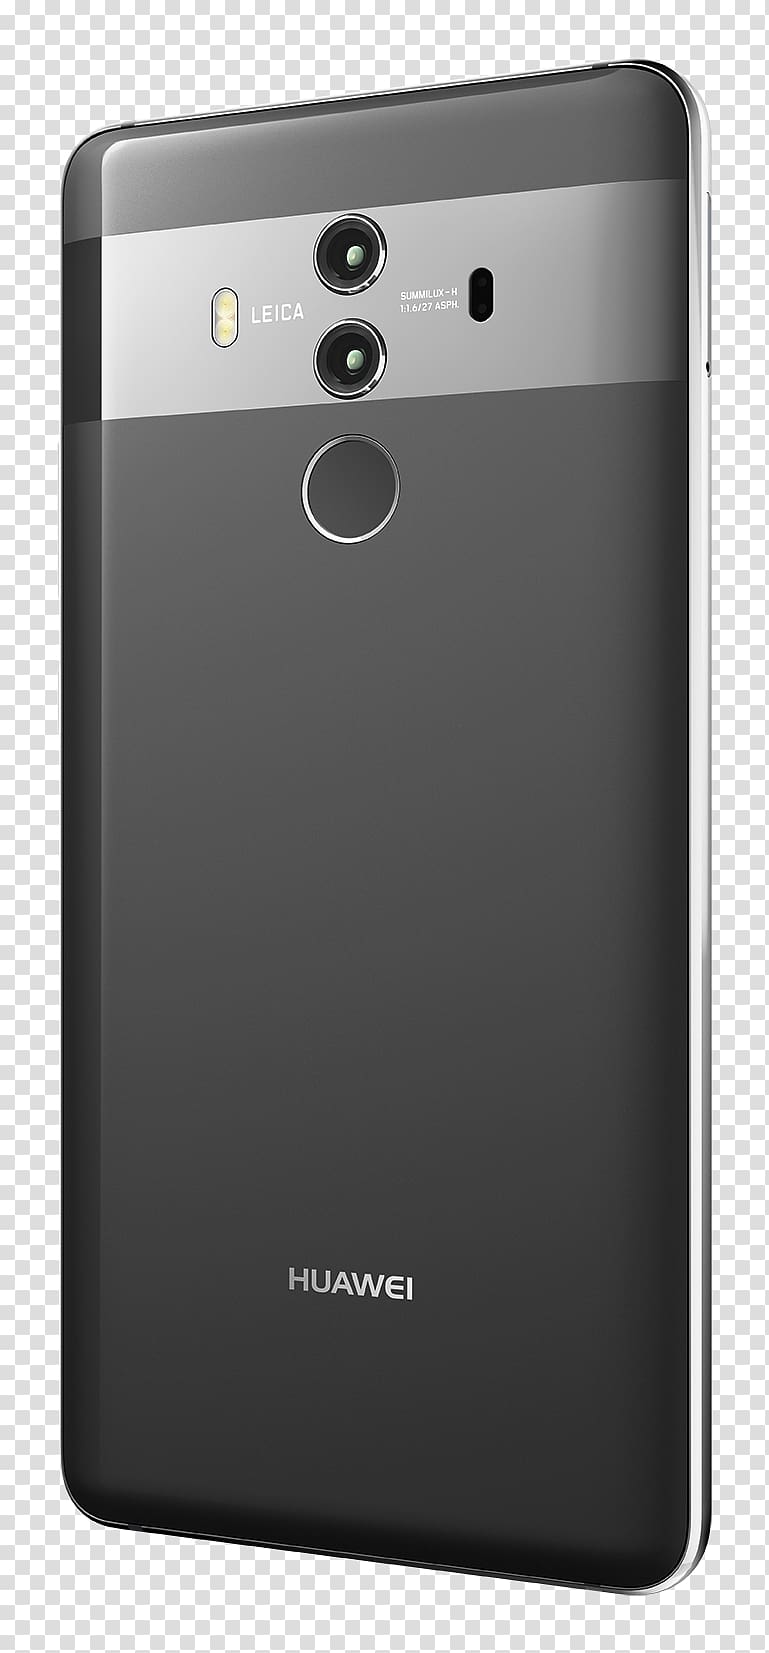 华为 Dual SIM Smartphone 4G Huawei, smartphone transparent background PNG clipart